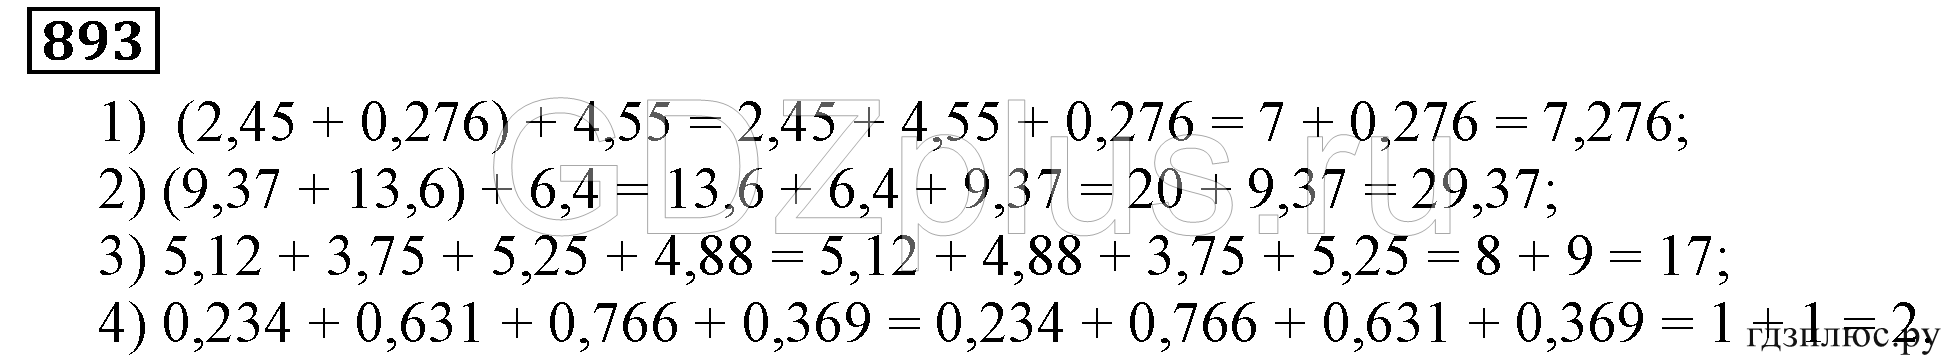 Никольский математика 893